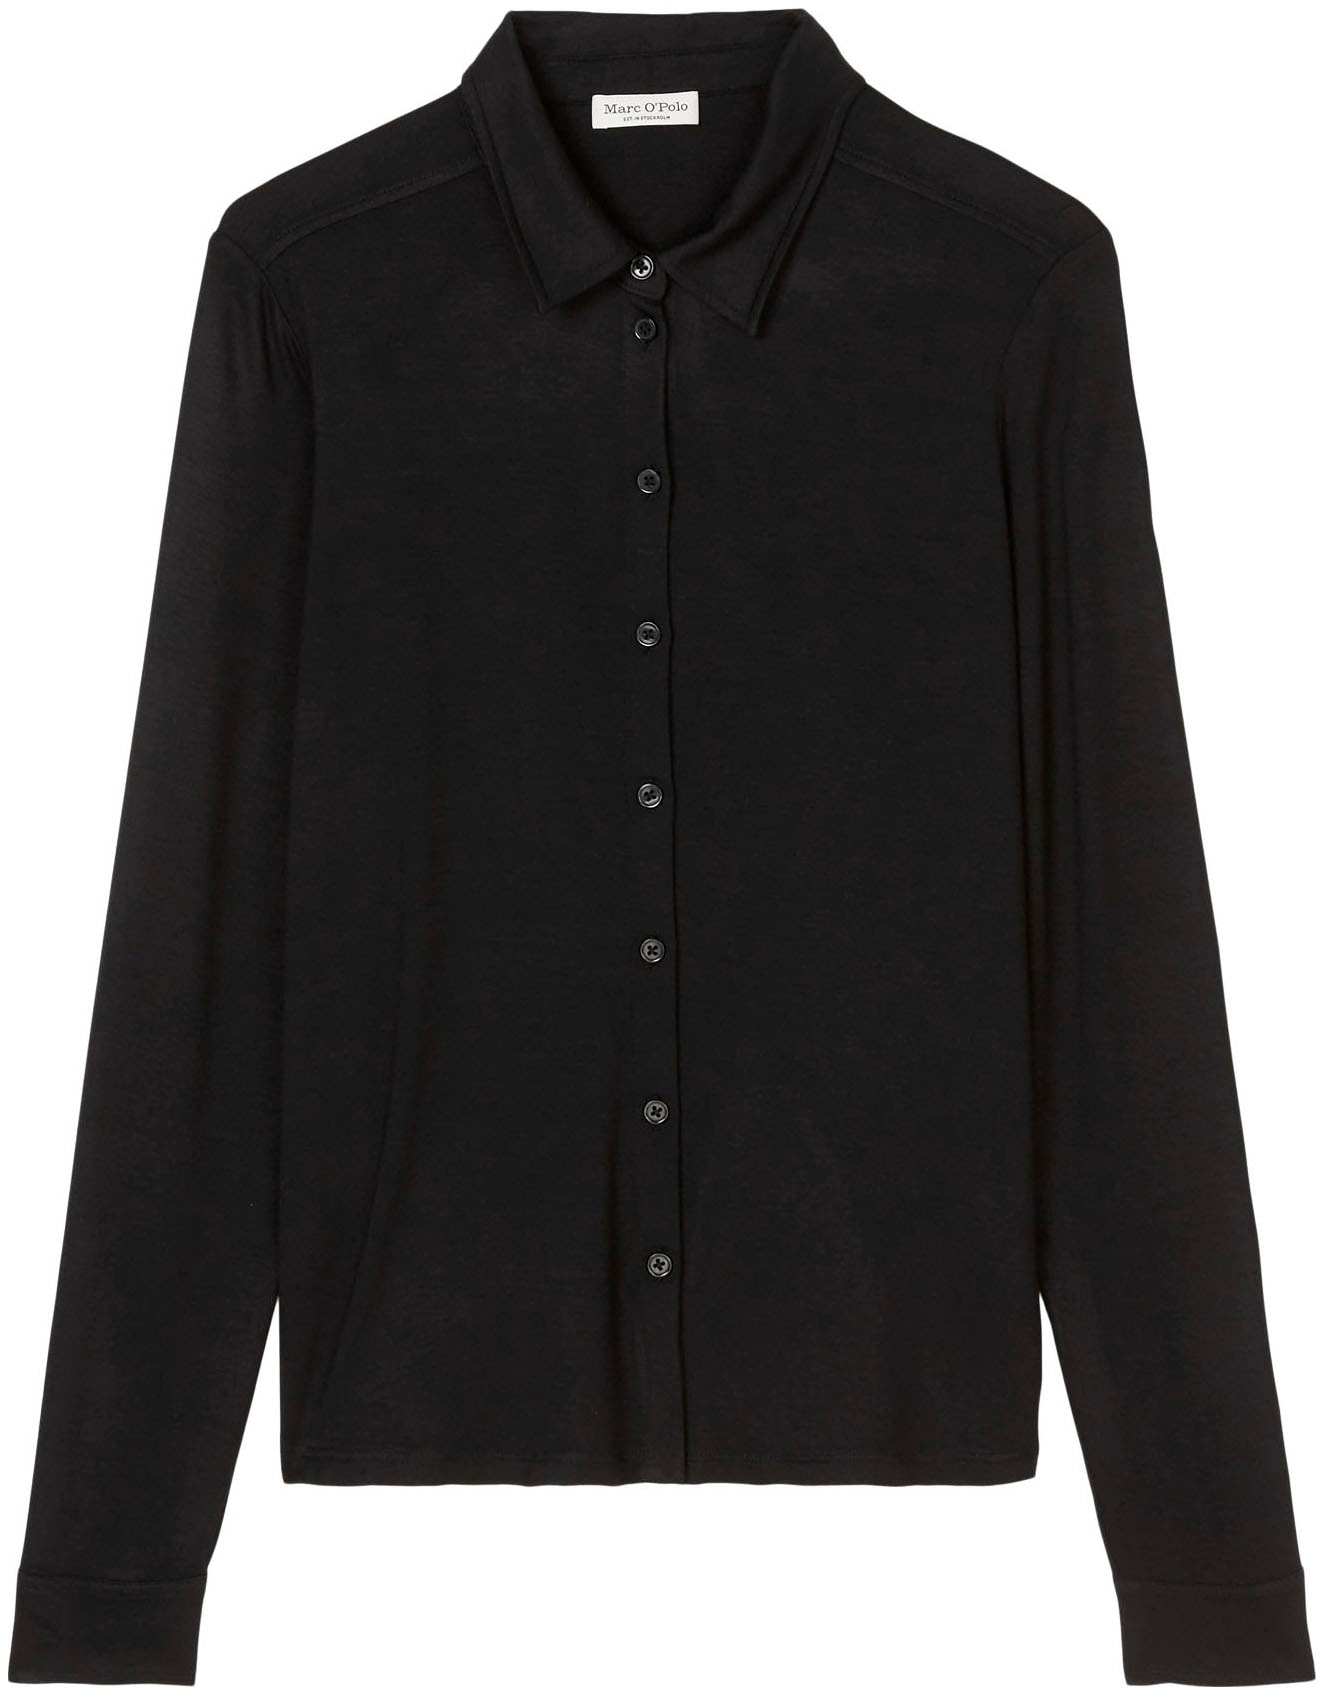 Marc O'Polo T-Shirt Jersey-blouse, long sleeve, collar günstig online kaufen